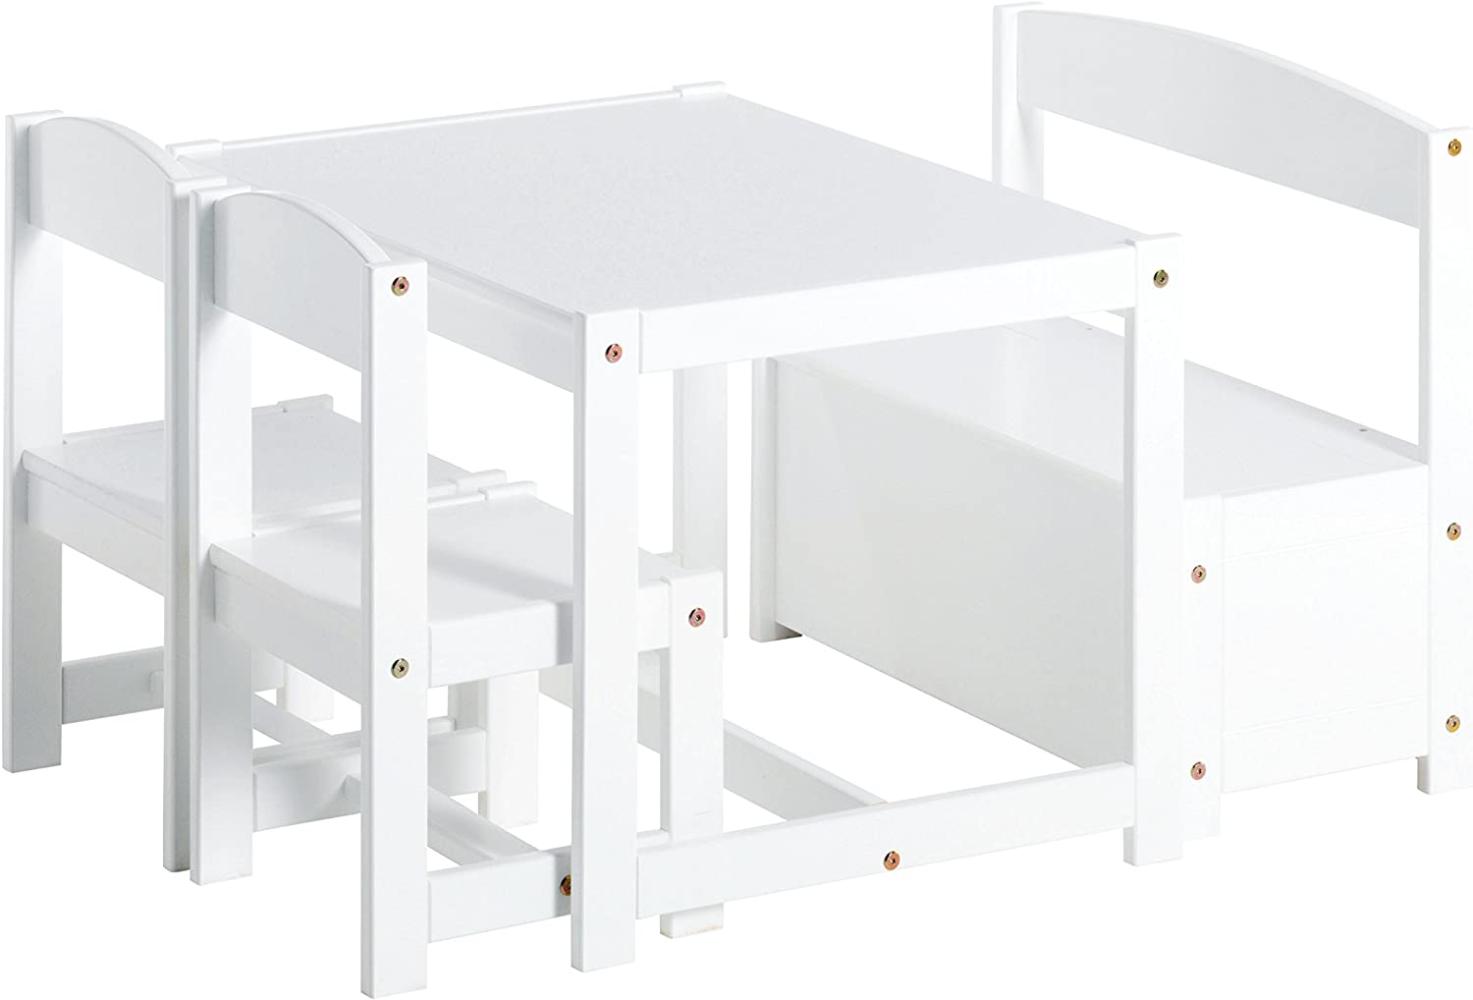 Hoppekids Mathilde Kindersitzgruppe mit 1 Kindertisch, 2 Kinderstühle und 1 Bank teilmassiv sehr stabil, Holz, weiß , 64 x 74 x 56 cm Bild 1